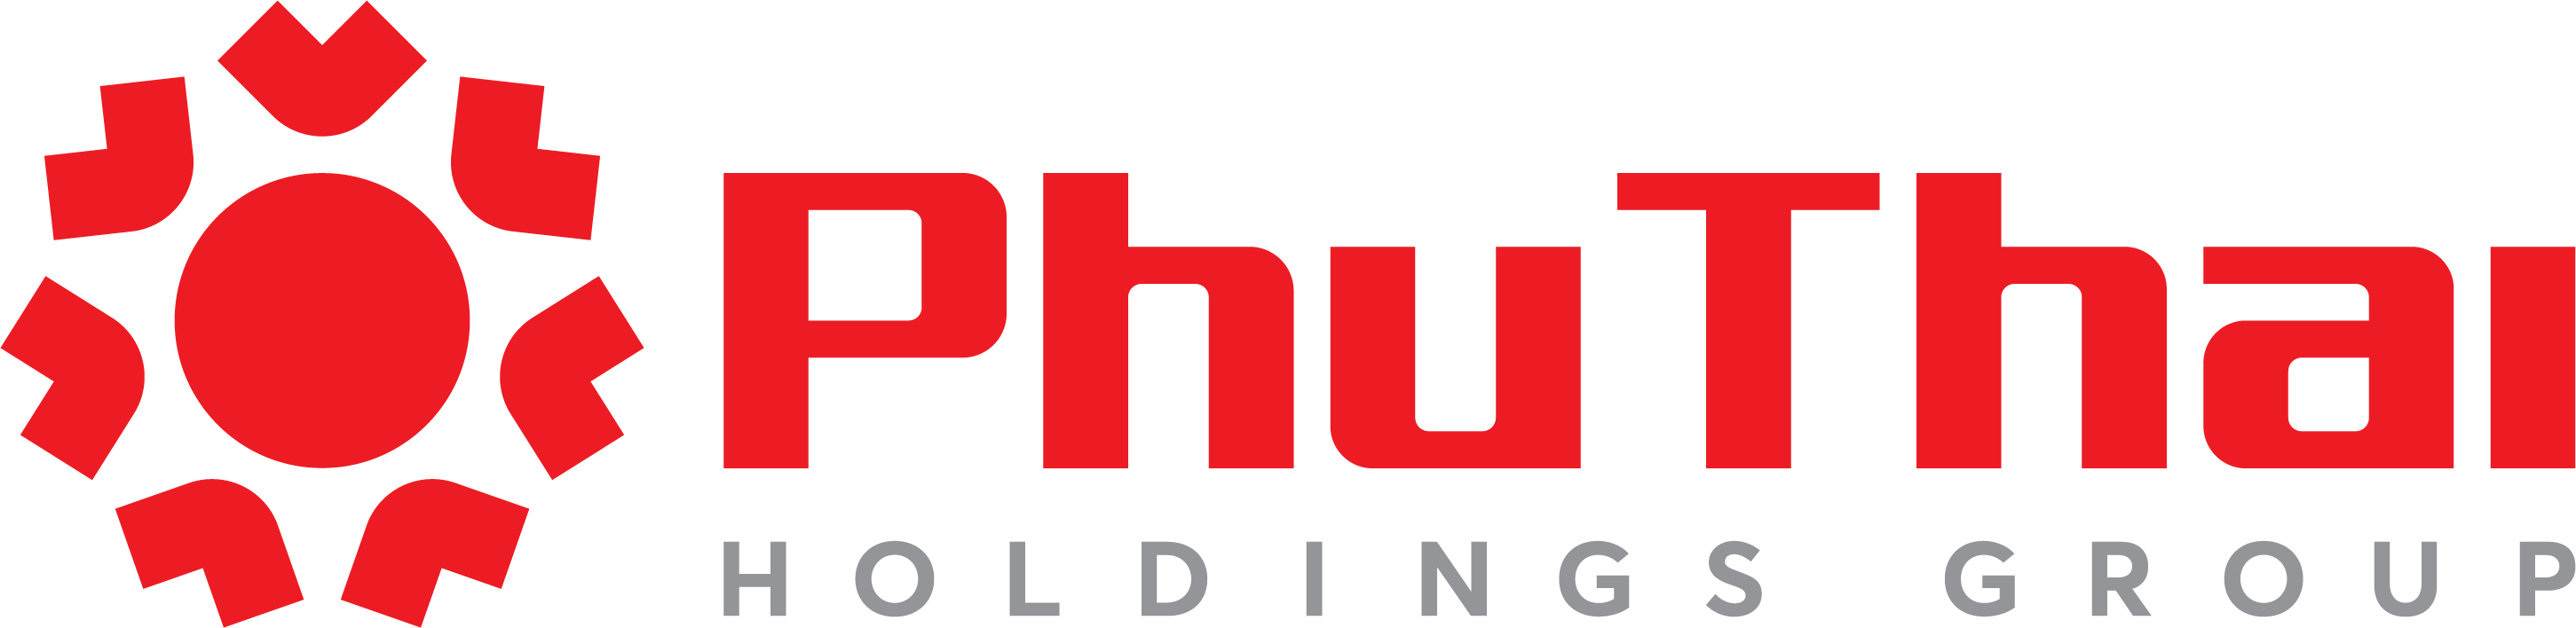 Tập đoàn Phú Thái Holdings